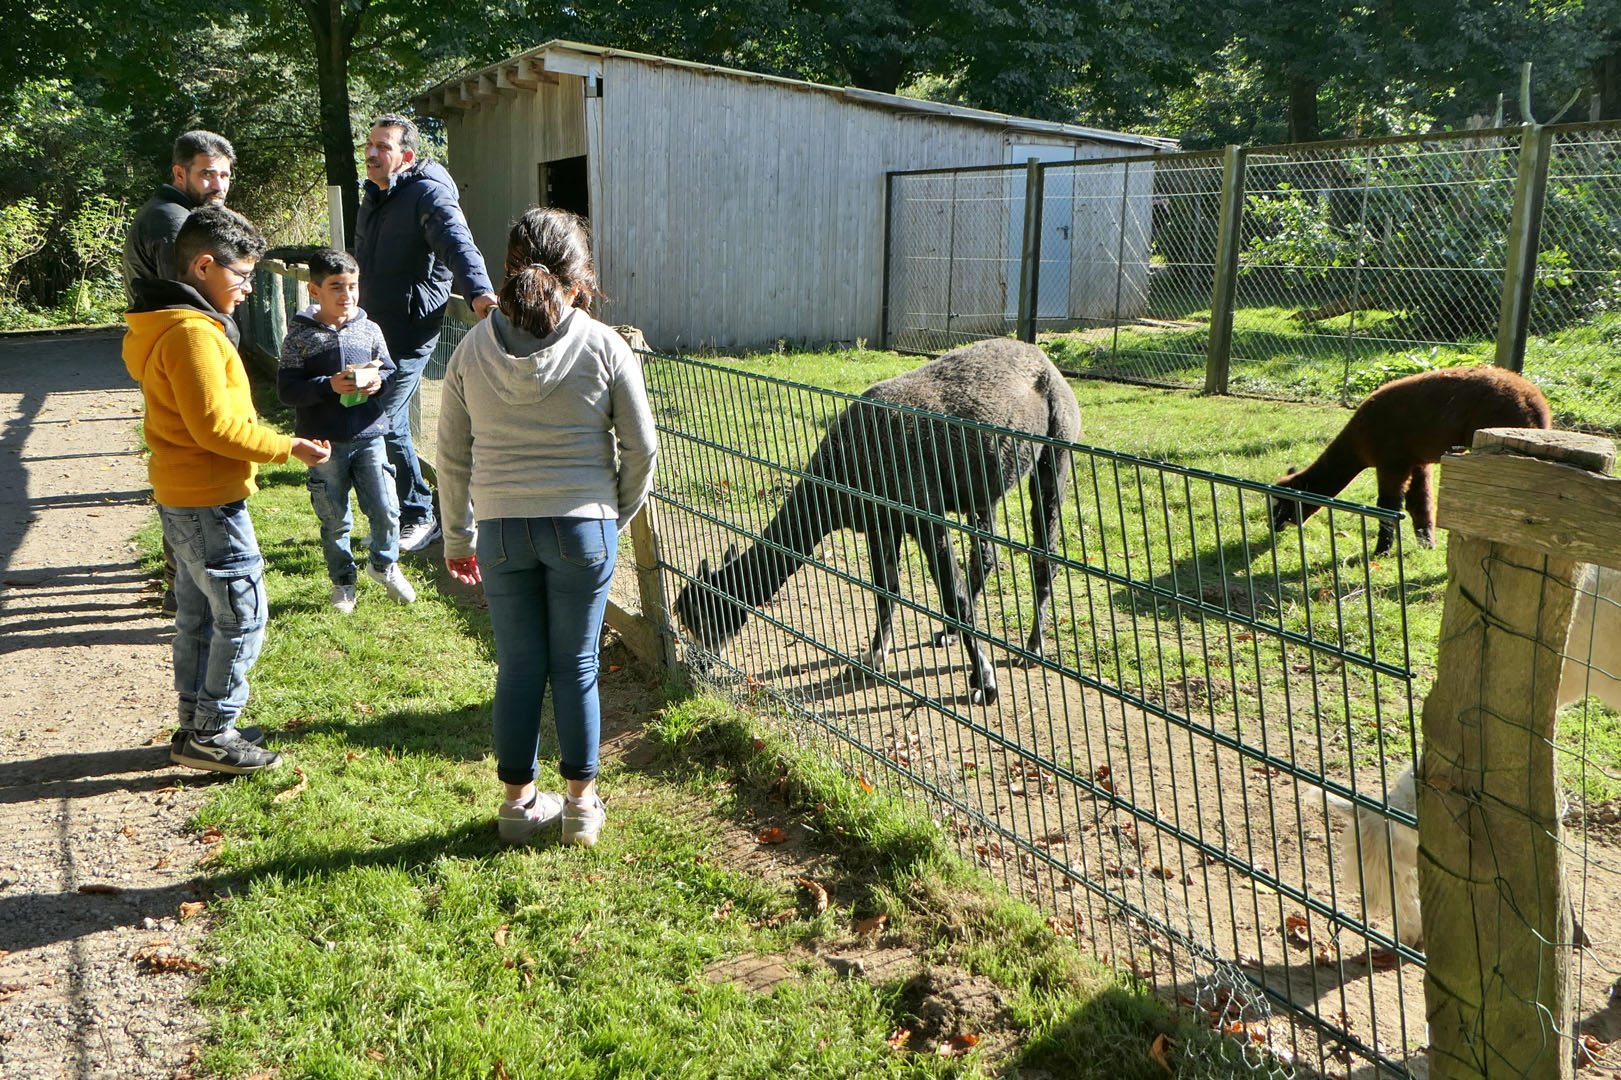 Tierpark Krüzen bei Lauenburg, Ausflug der FIR am Samstag, den